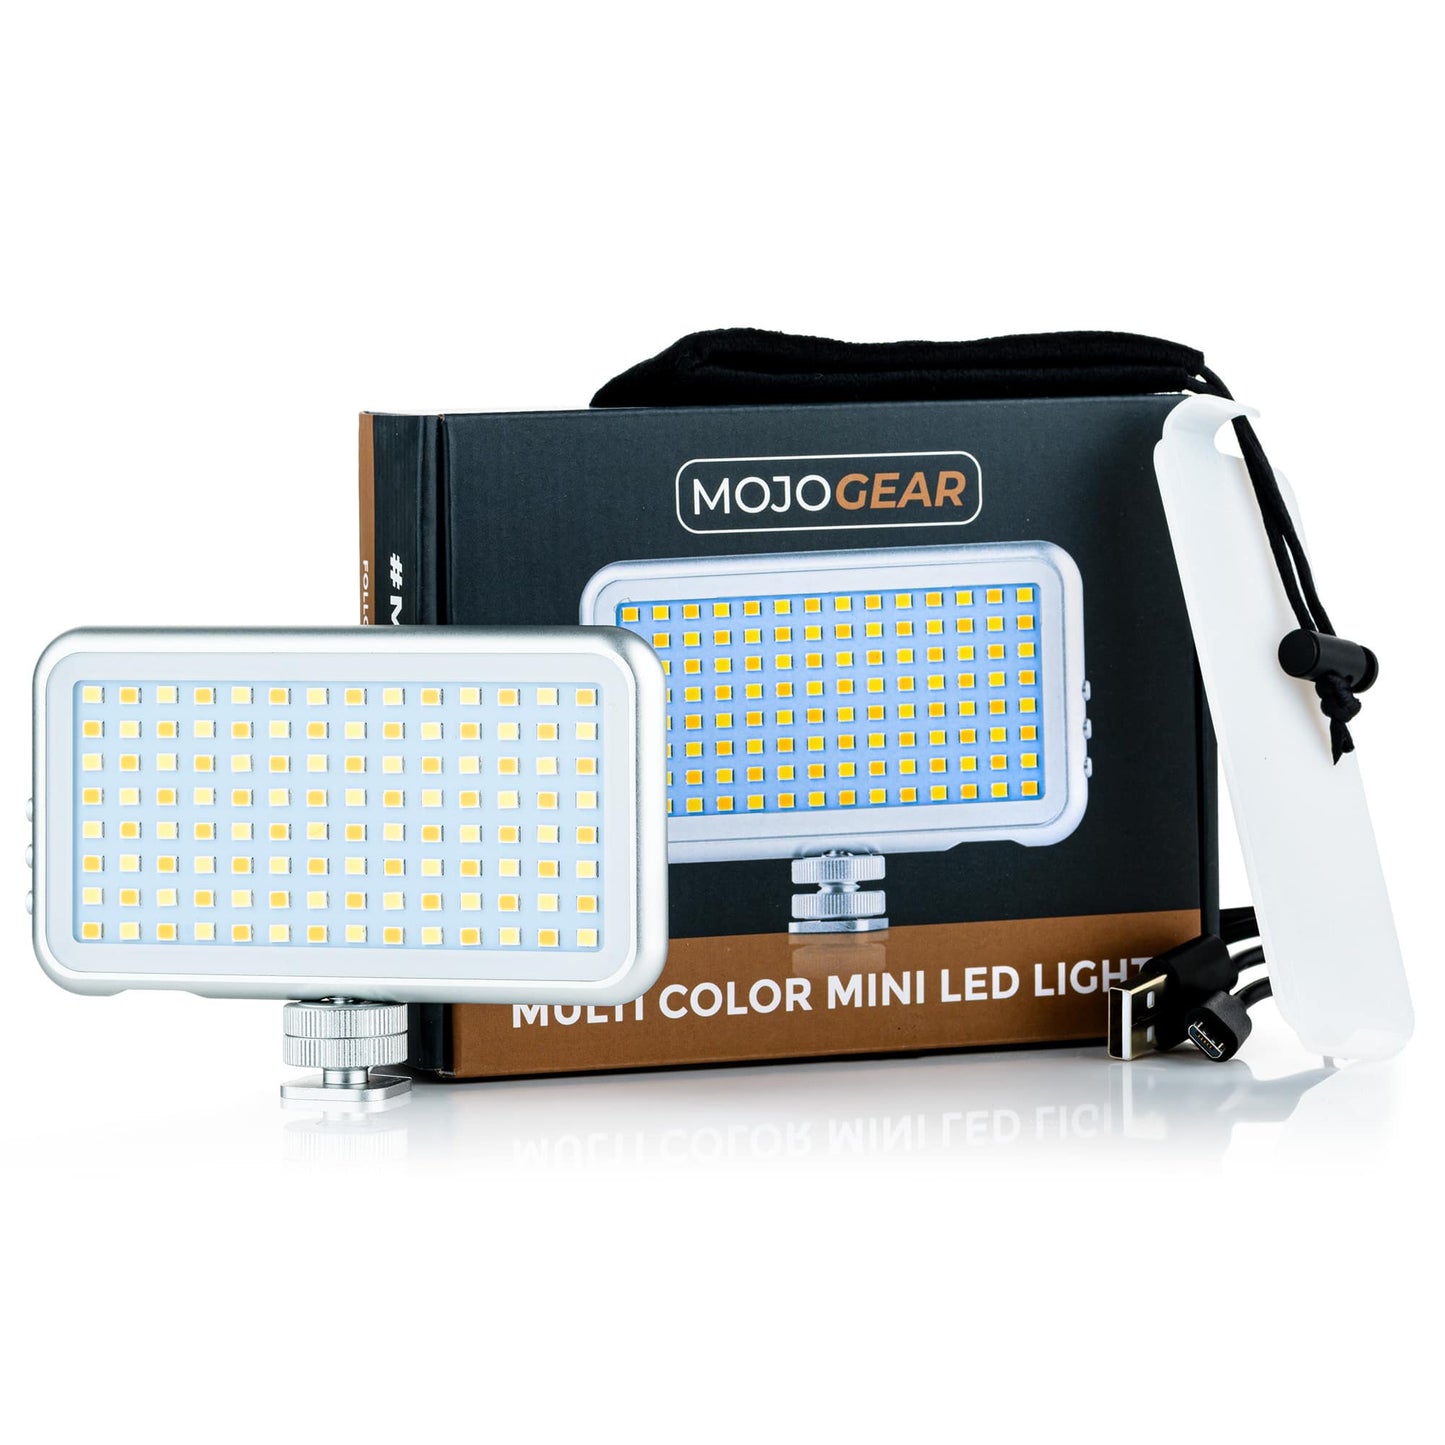 MOJOGEAR Multi Color Mini LED-lamp